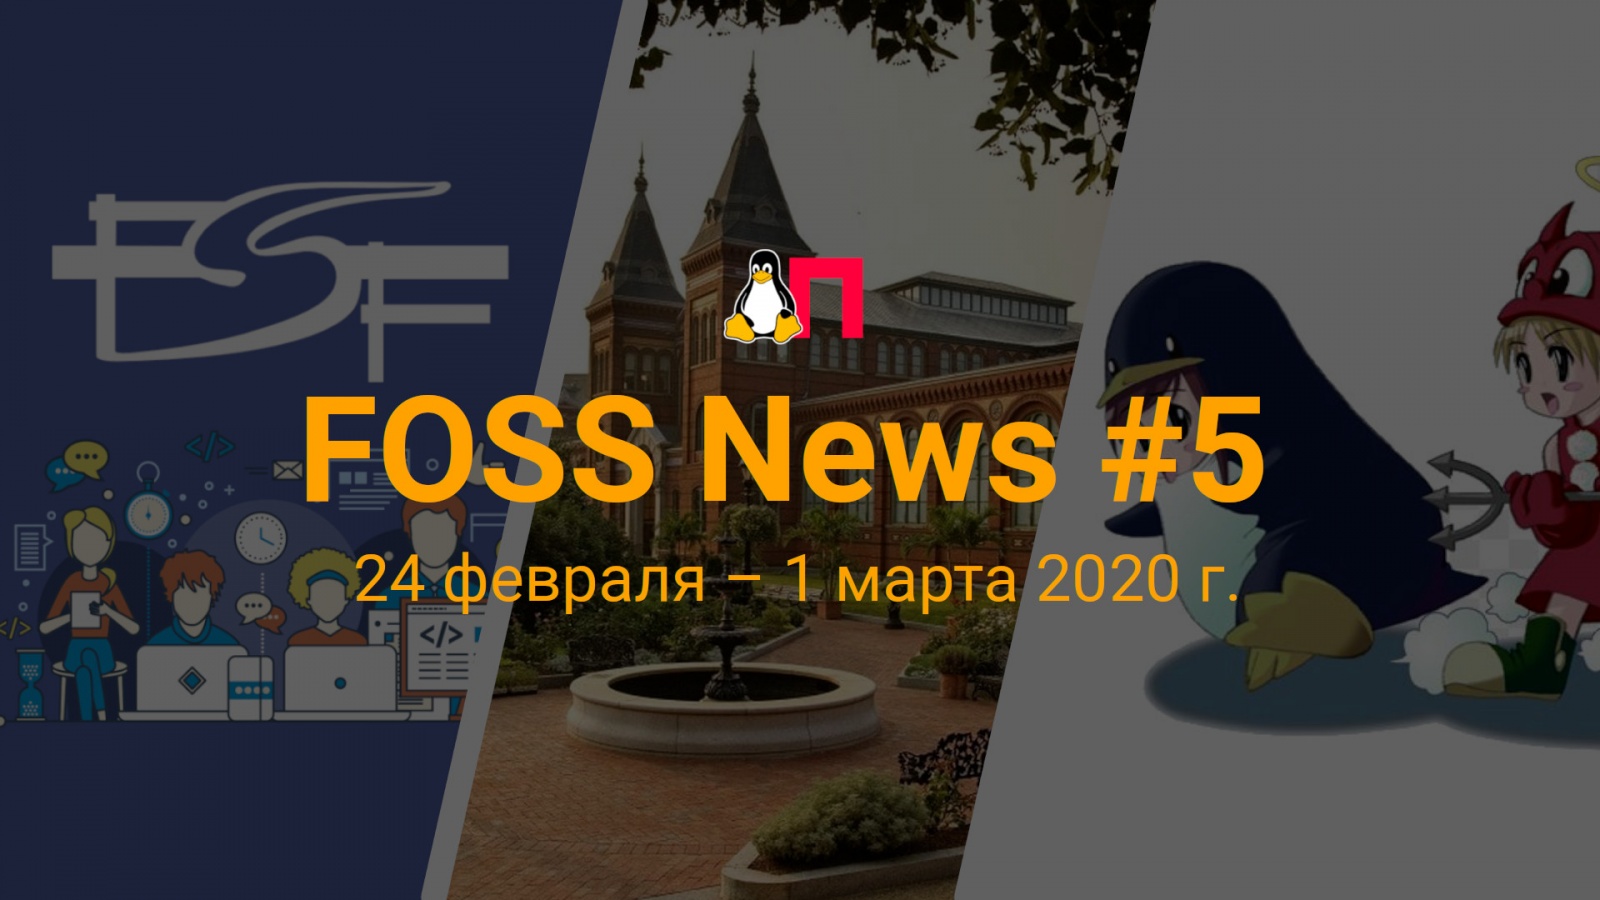 FOSS News №5 — обзор новостей свободного и открытого ПО за 24 февраля — 1 марта 2020 года - 1